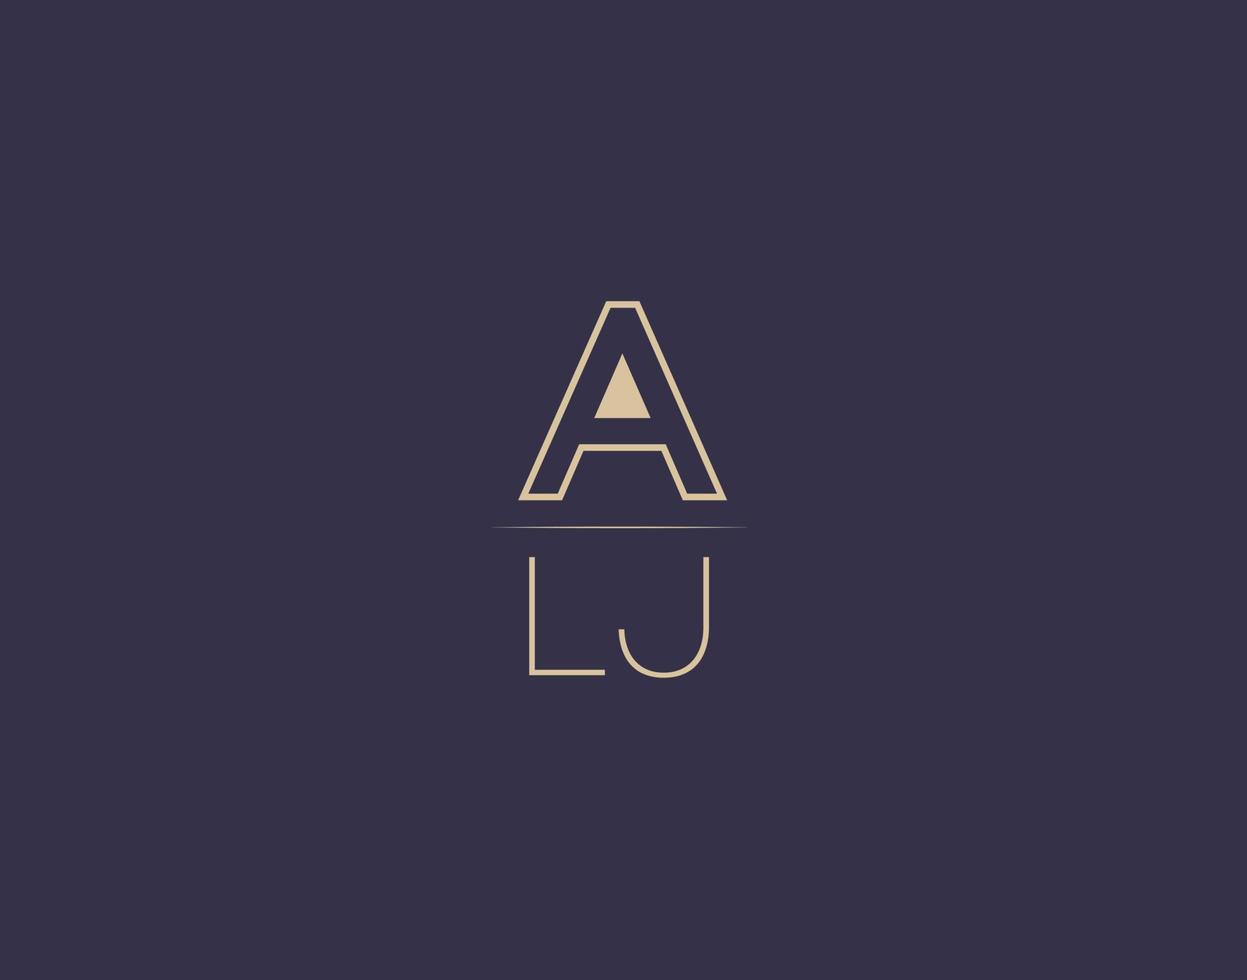 letras alj design de logotipo moderno imagens vetoriais minimalistas vetor